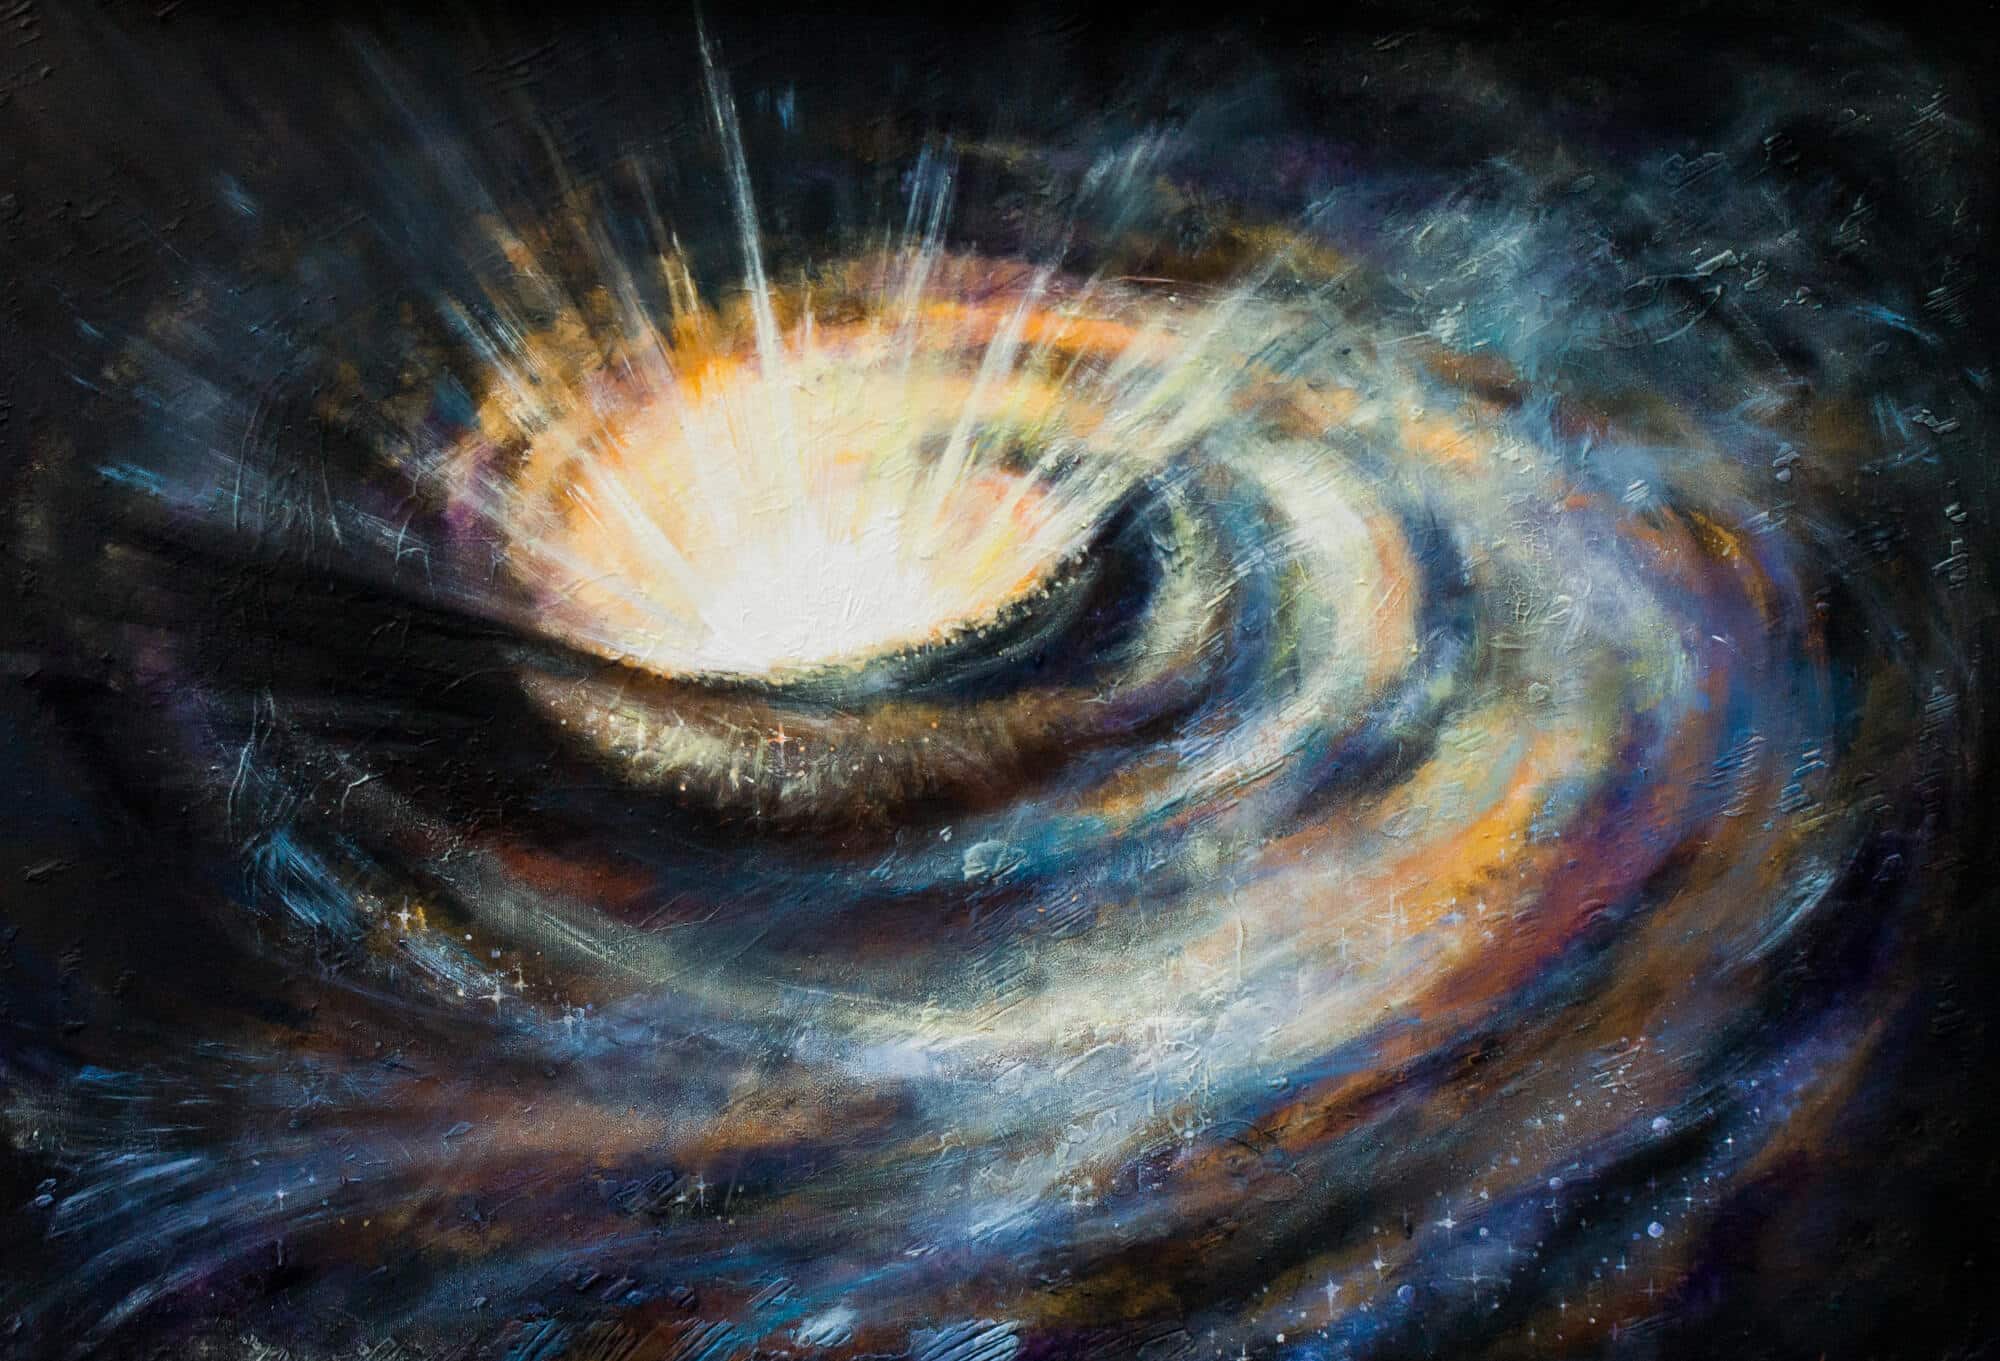 חור שחור במרכז גלקסיה ספירלית.   <a href="https://depositphotos.com. ">המחשה: depositphotos.com</a>